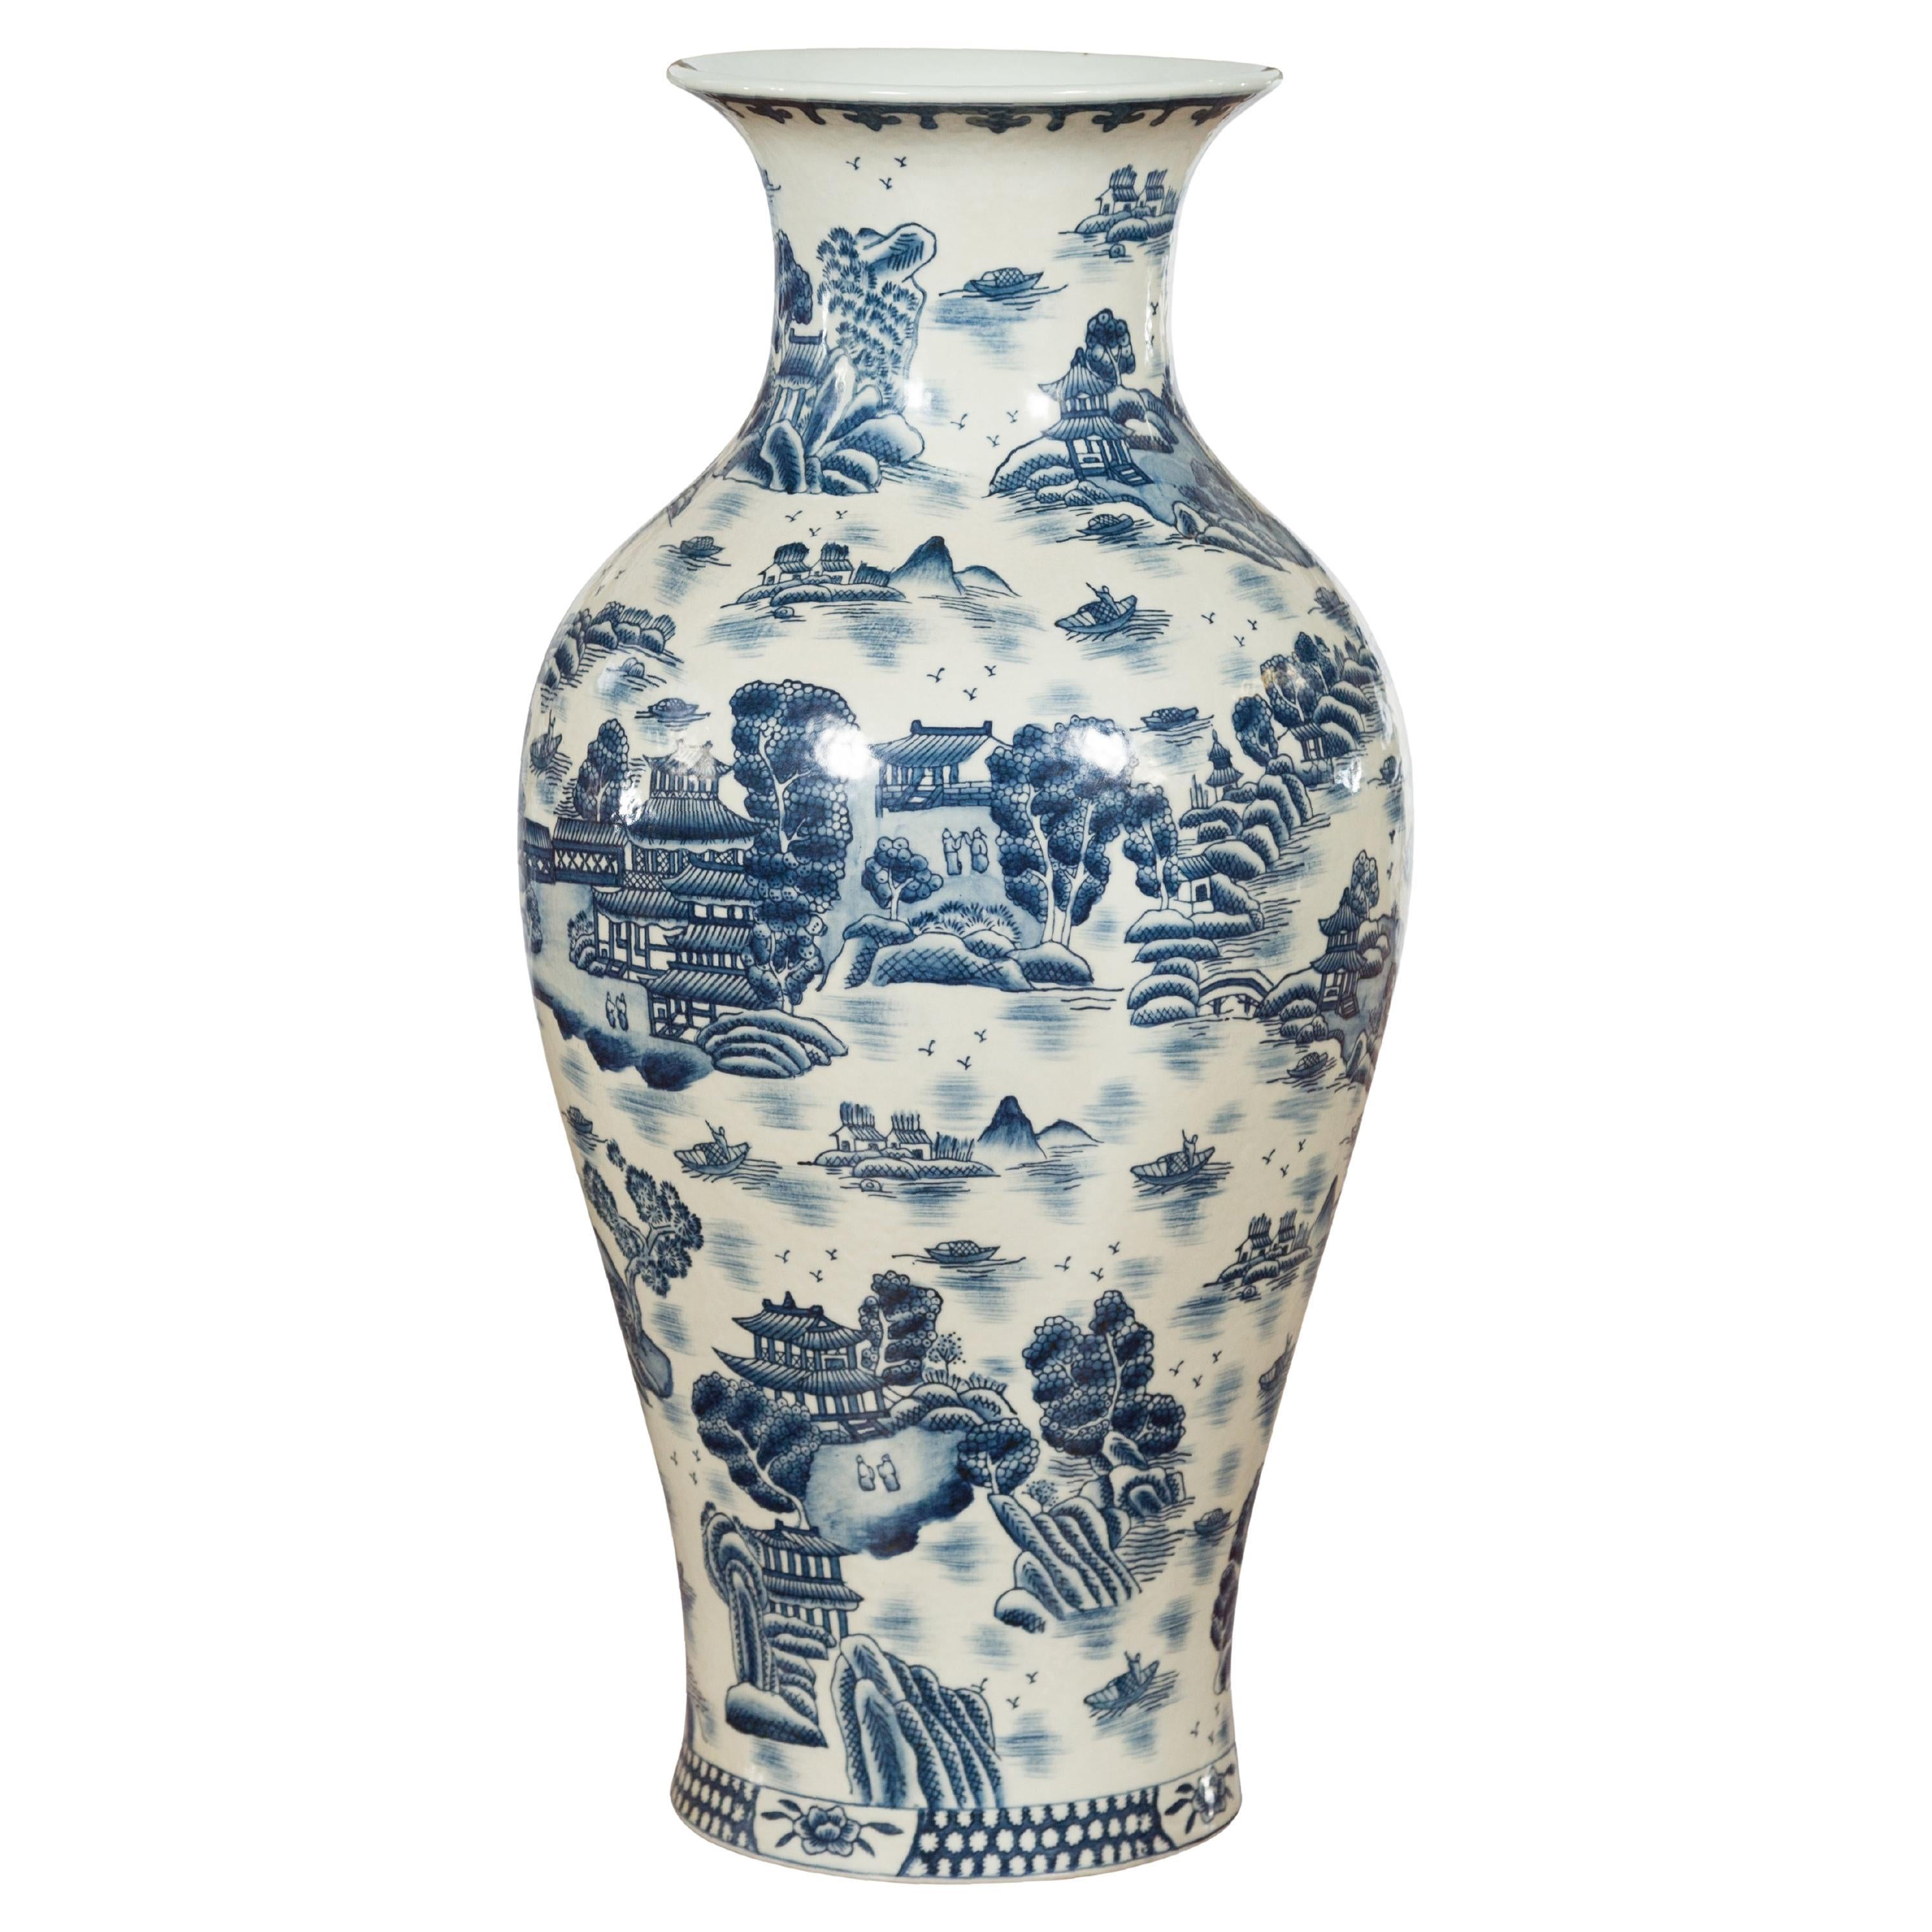 Chinesische Vintage-Vase aus blauem und weißem Porzellan mit Landschaften und Architekturen